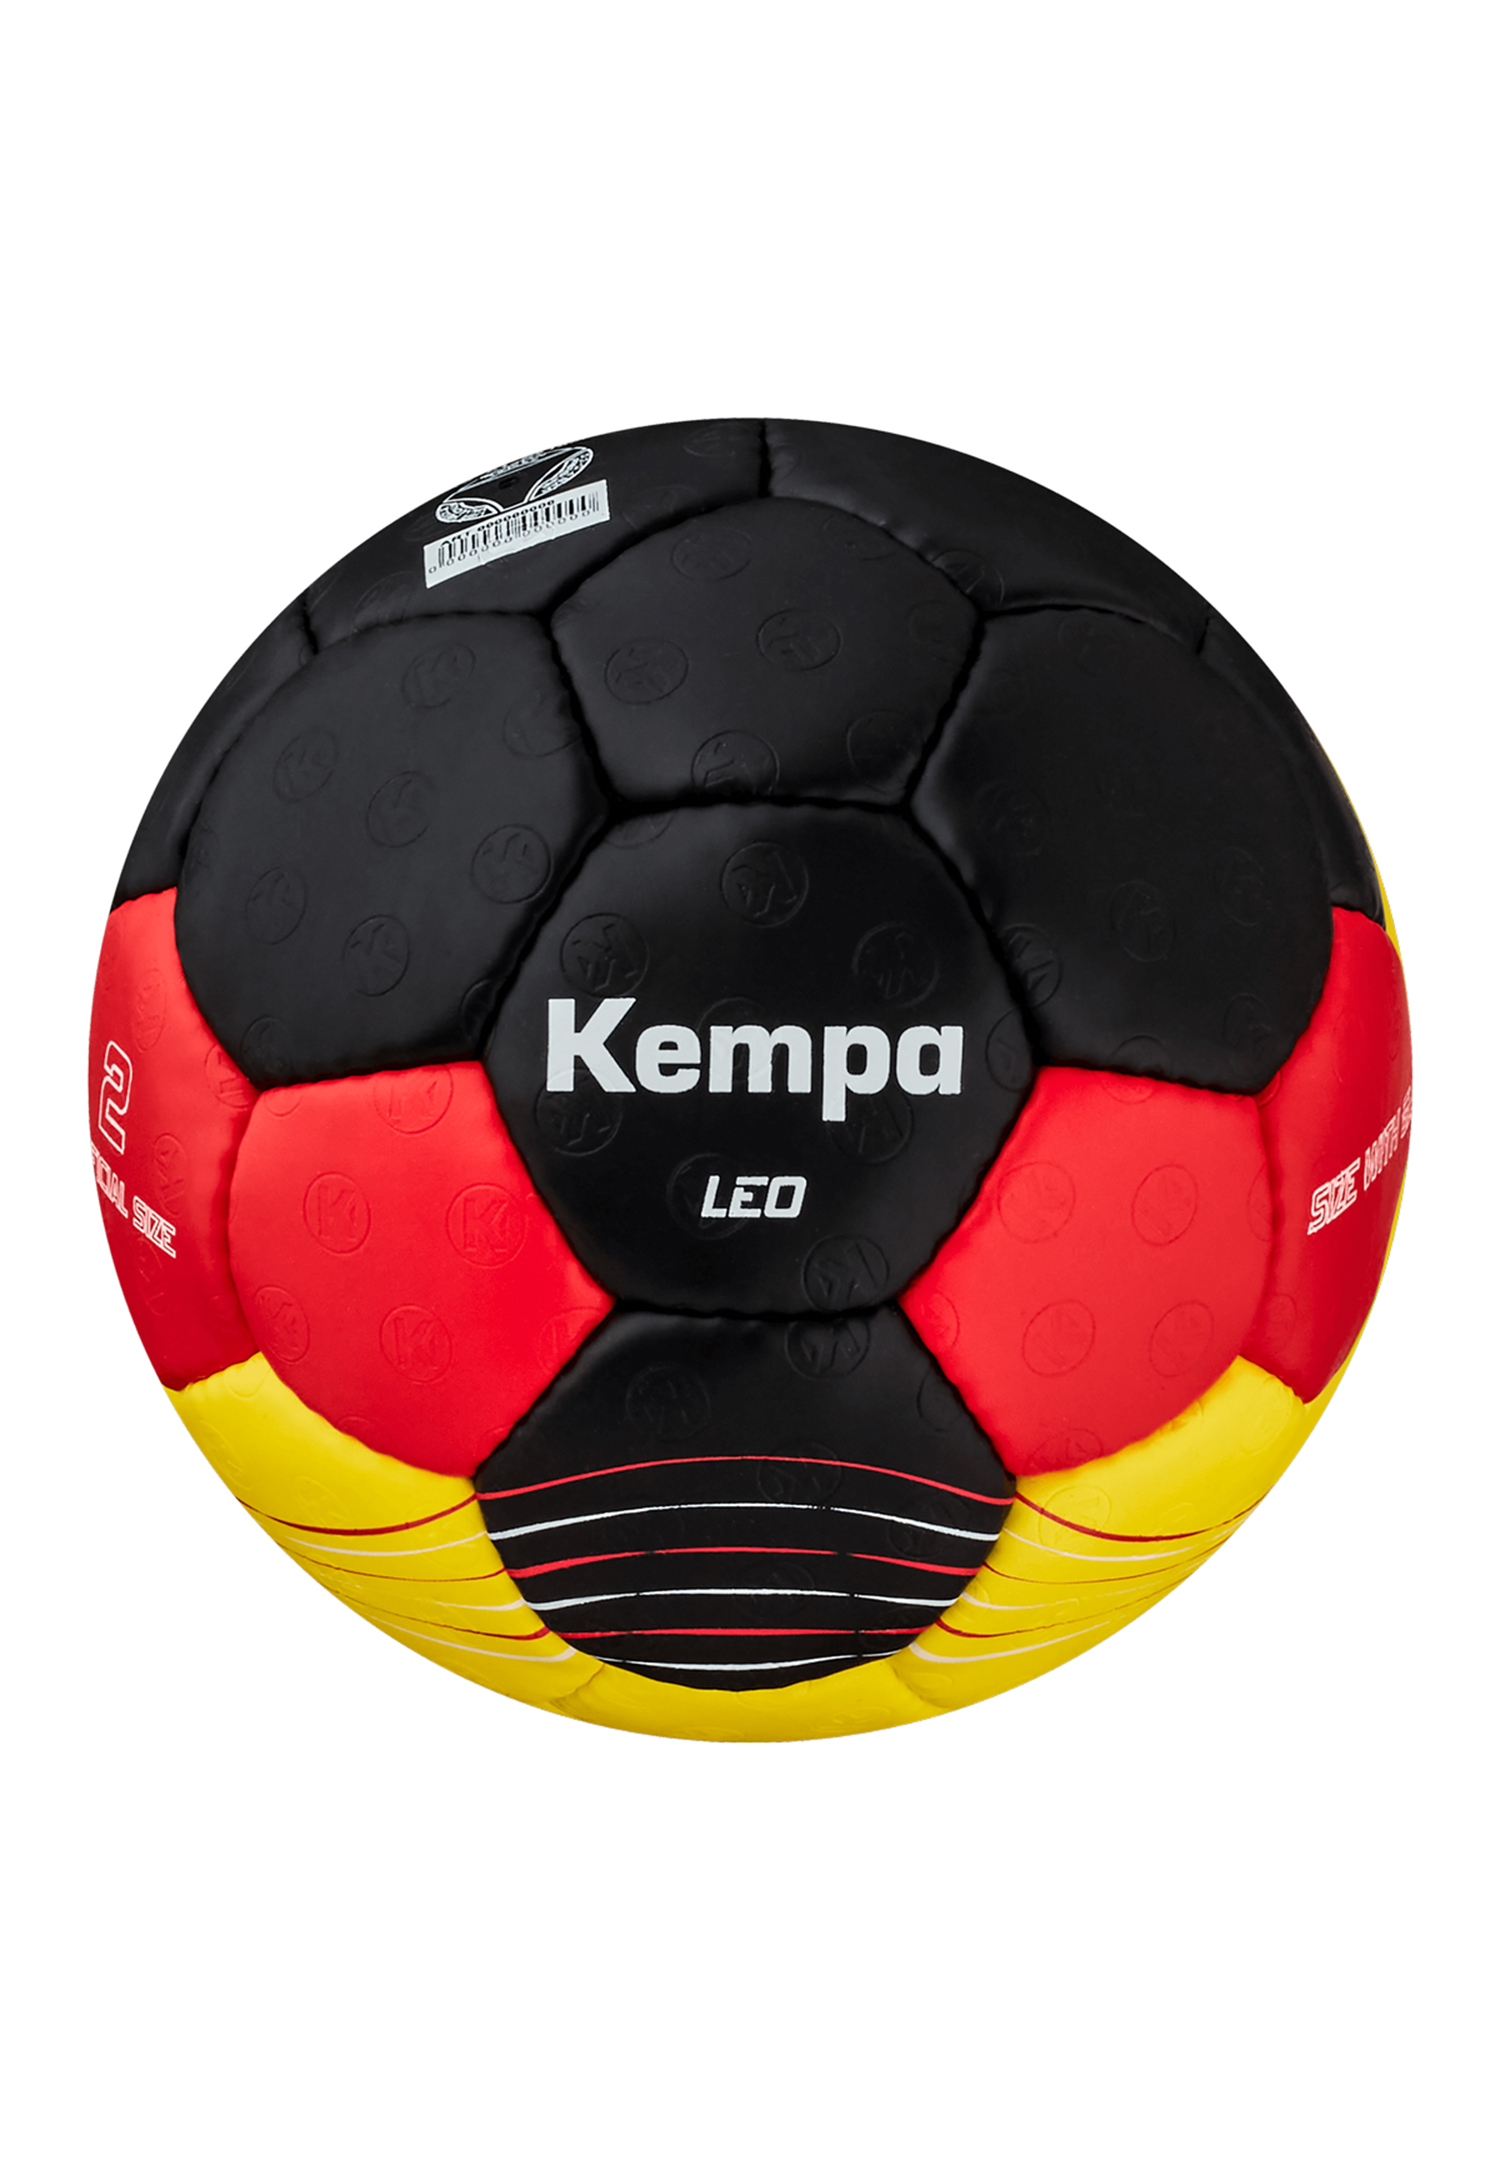 Kempa Handball Leo Team Germany Size 1 200191601 schwarz/rot/gold